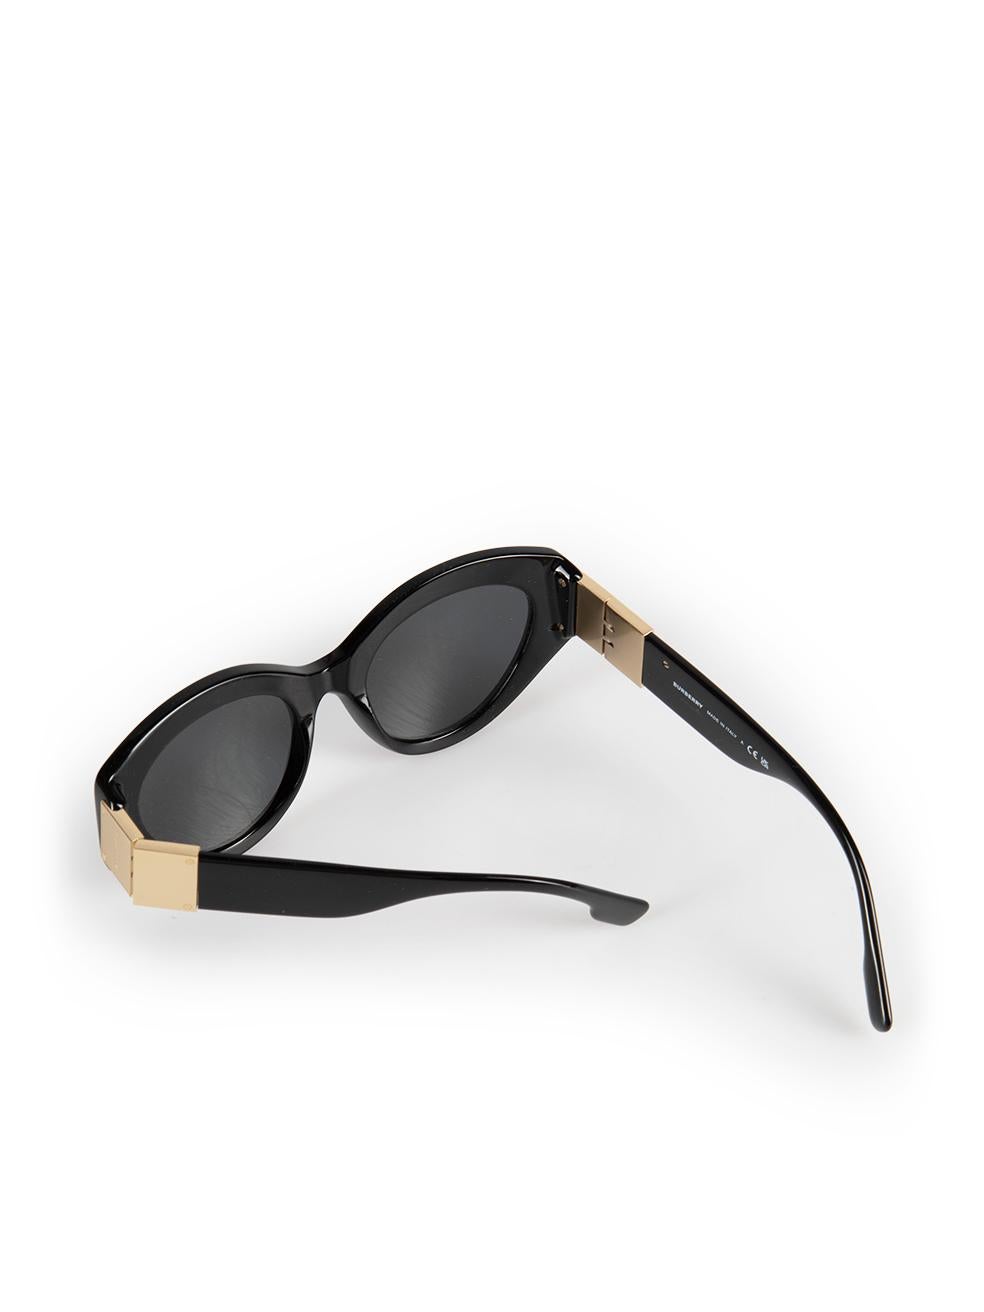 Burberry Black Cat Eye Sophia Sunglasses For Sale 3